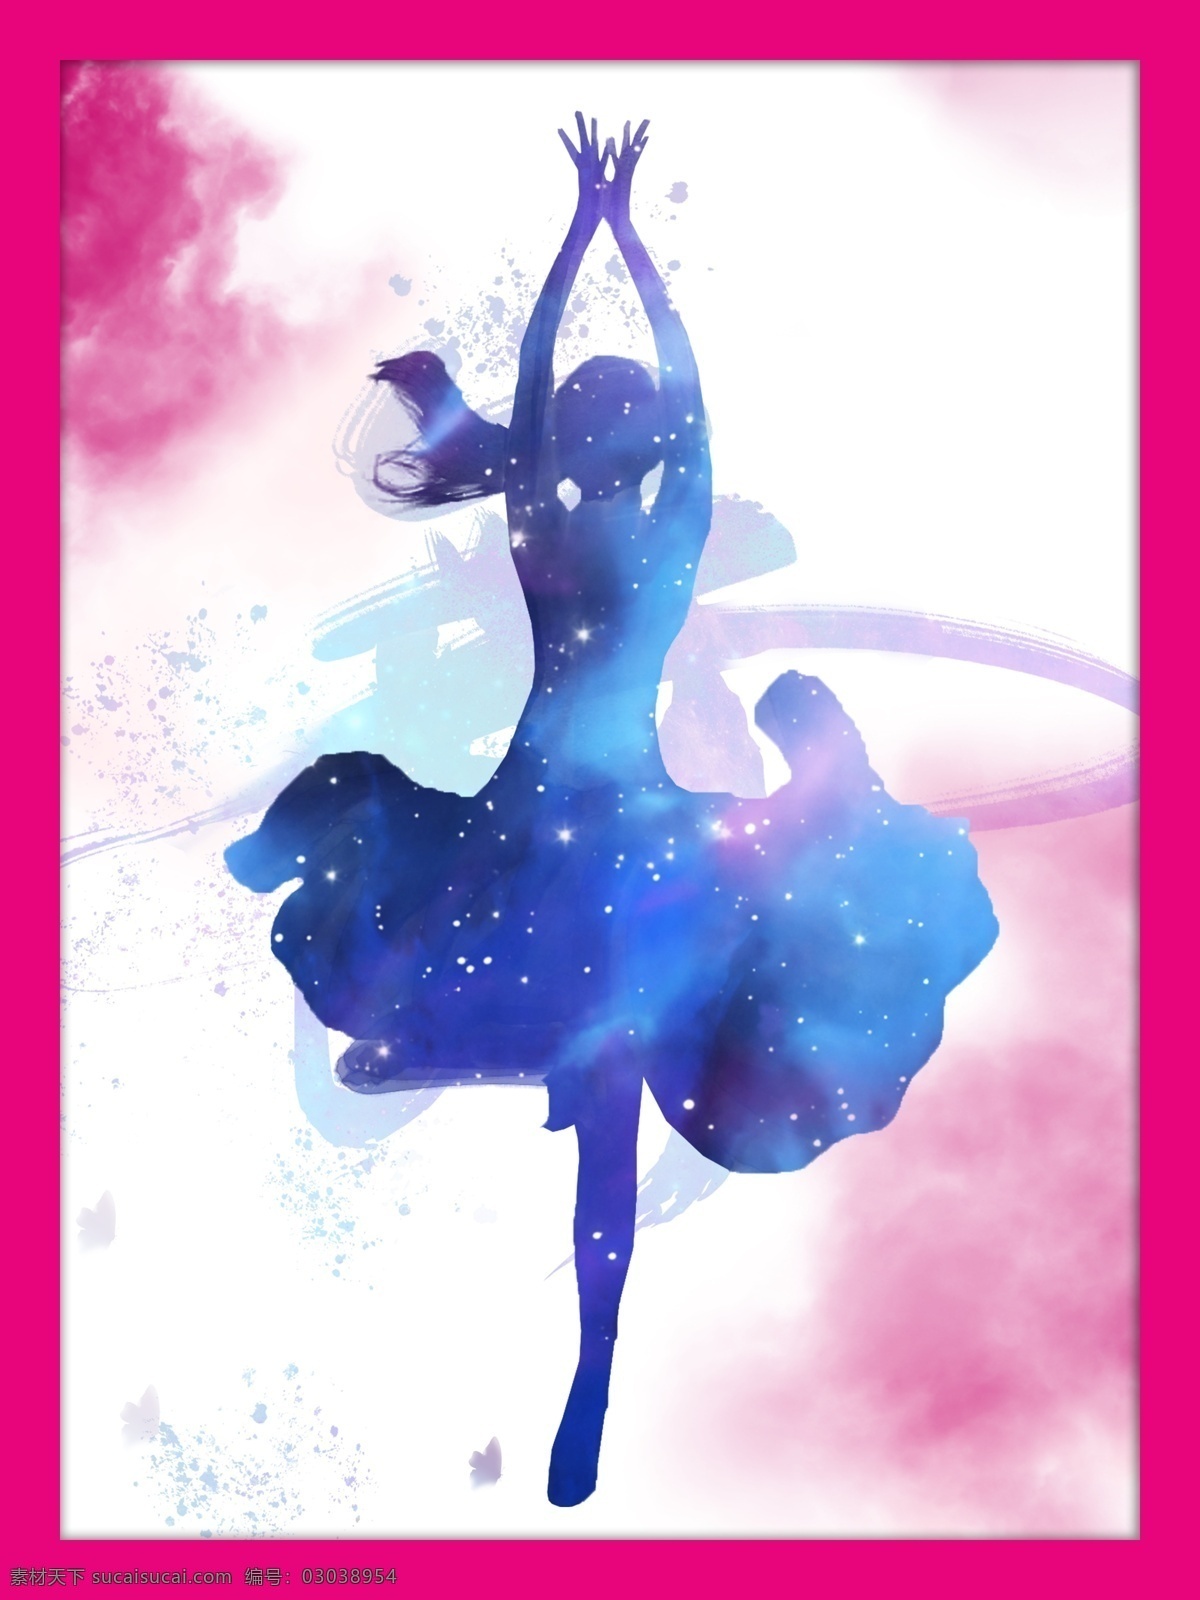 舞蹈室 宣传 挂画 舞蹈 舞者 芭蕾 矢量图形 彩色 浓墨底纹 女 舞蹈室挂画 墙体挂画 室内广告设计